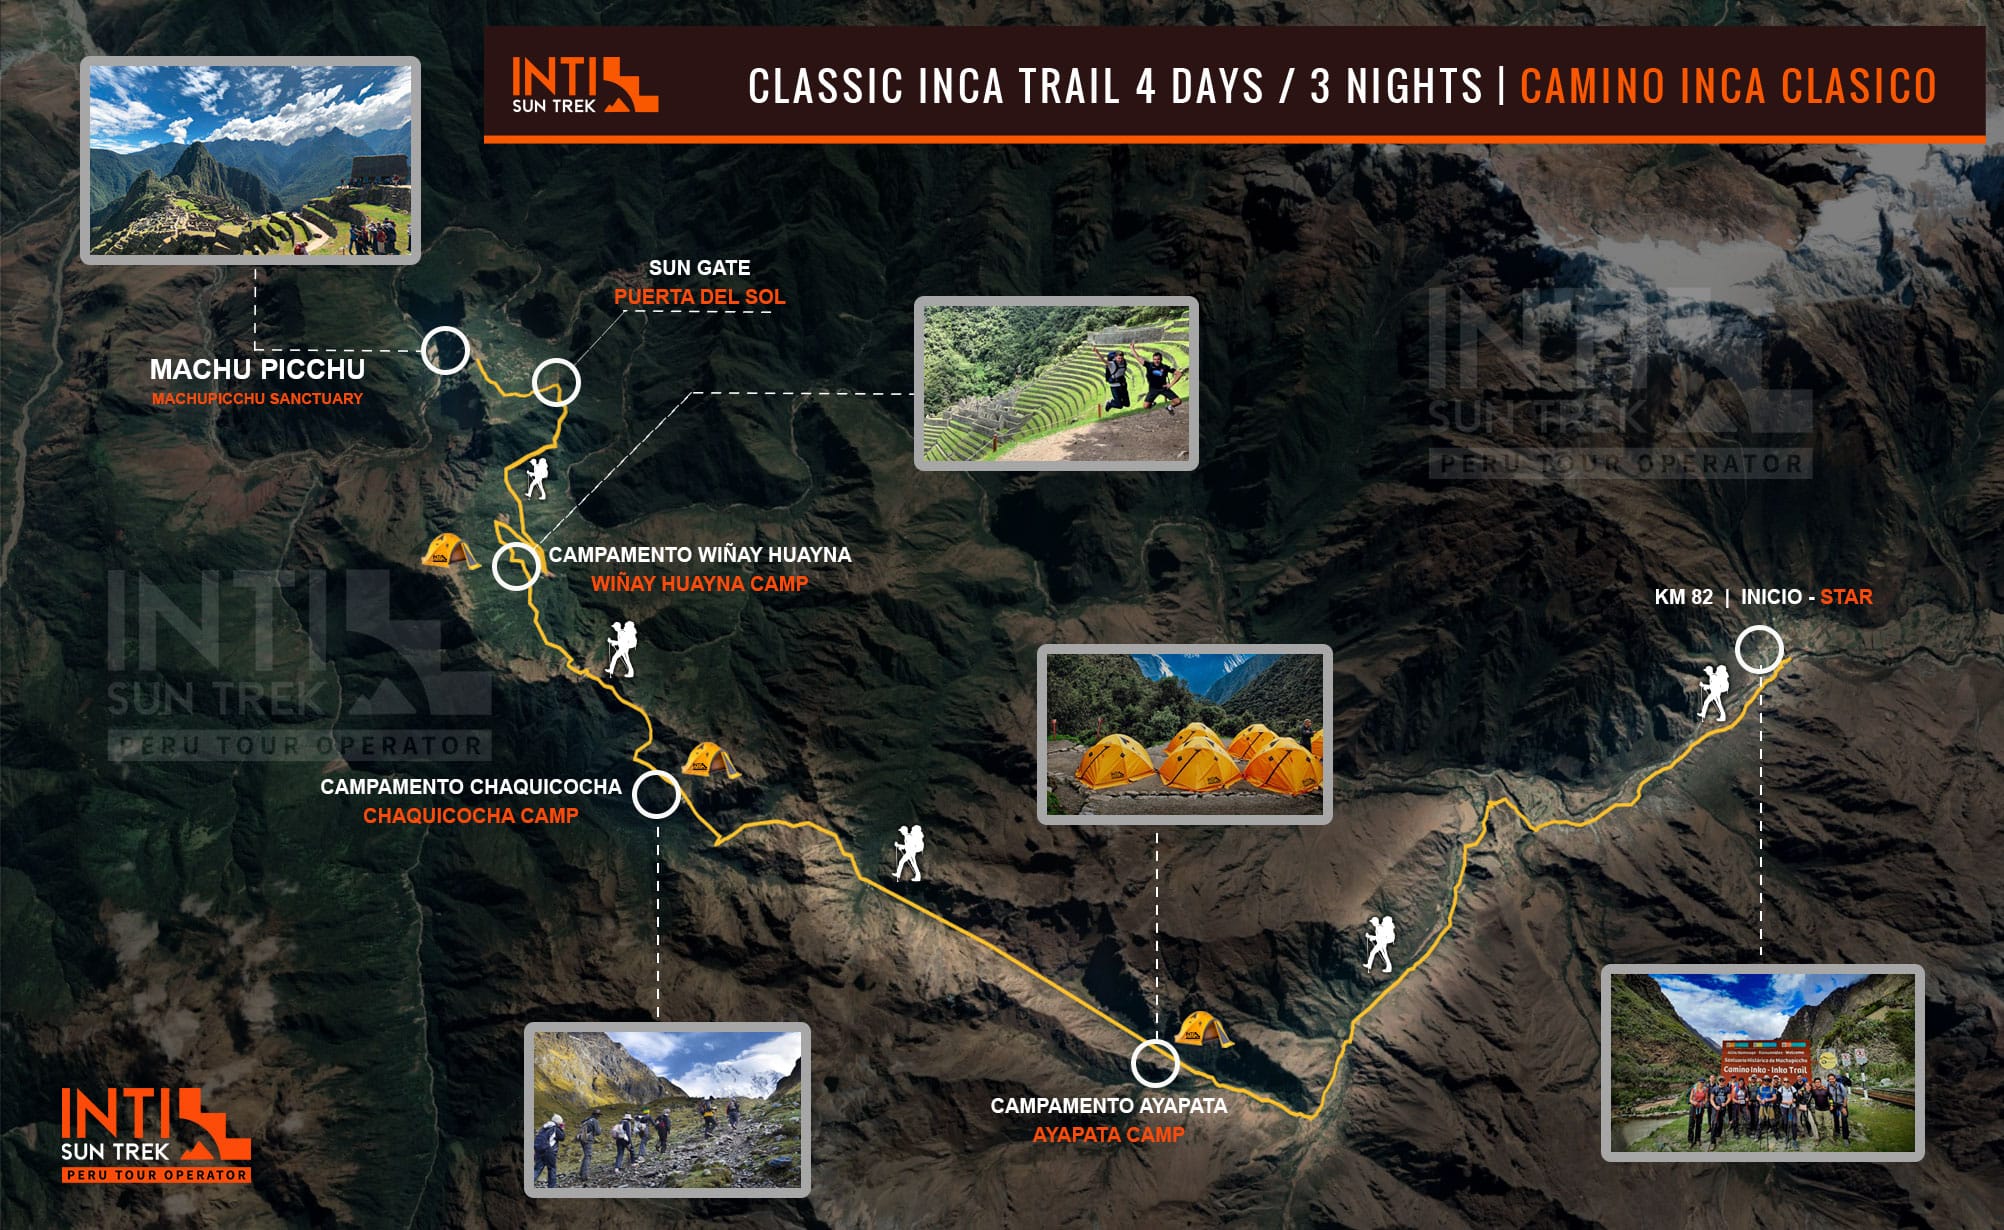 Trilha Inca Clássica para Machu Picchu 4 dias / 3 noites